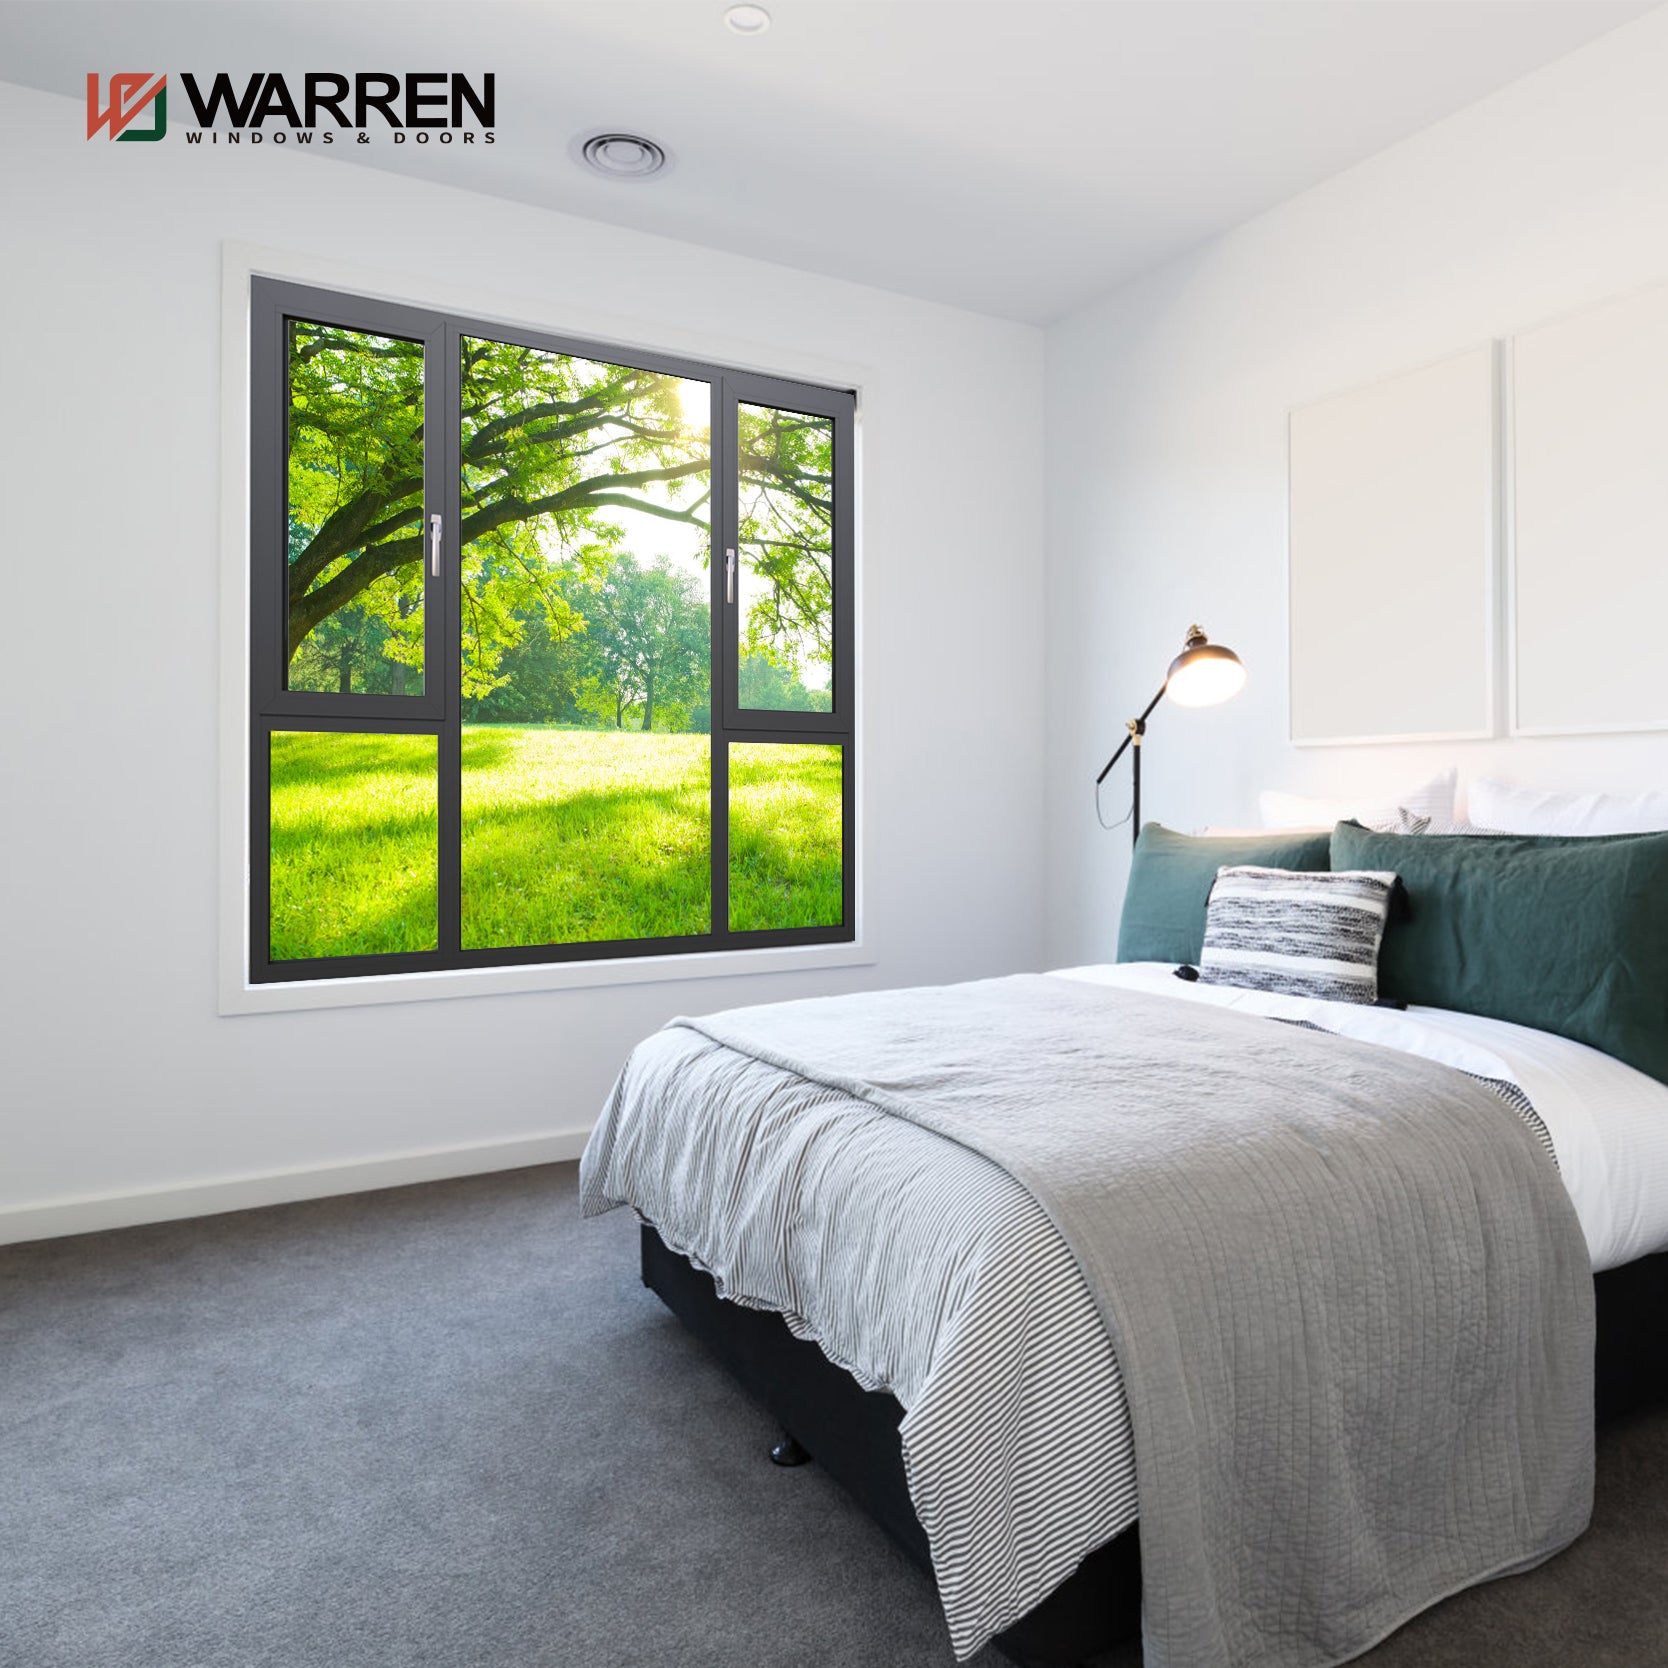 Warren Chinese Factory Made Black Aluminum Double Glass Tilt Turn Energy Efficient Casement Windows